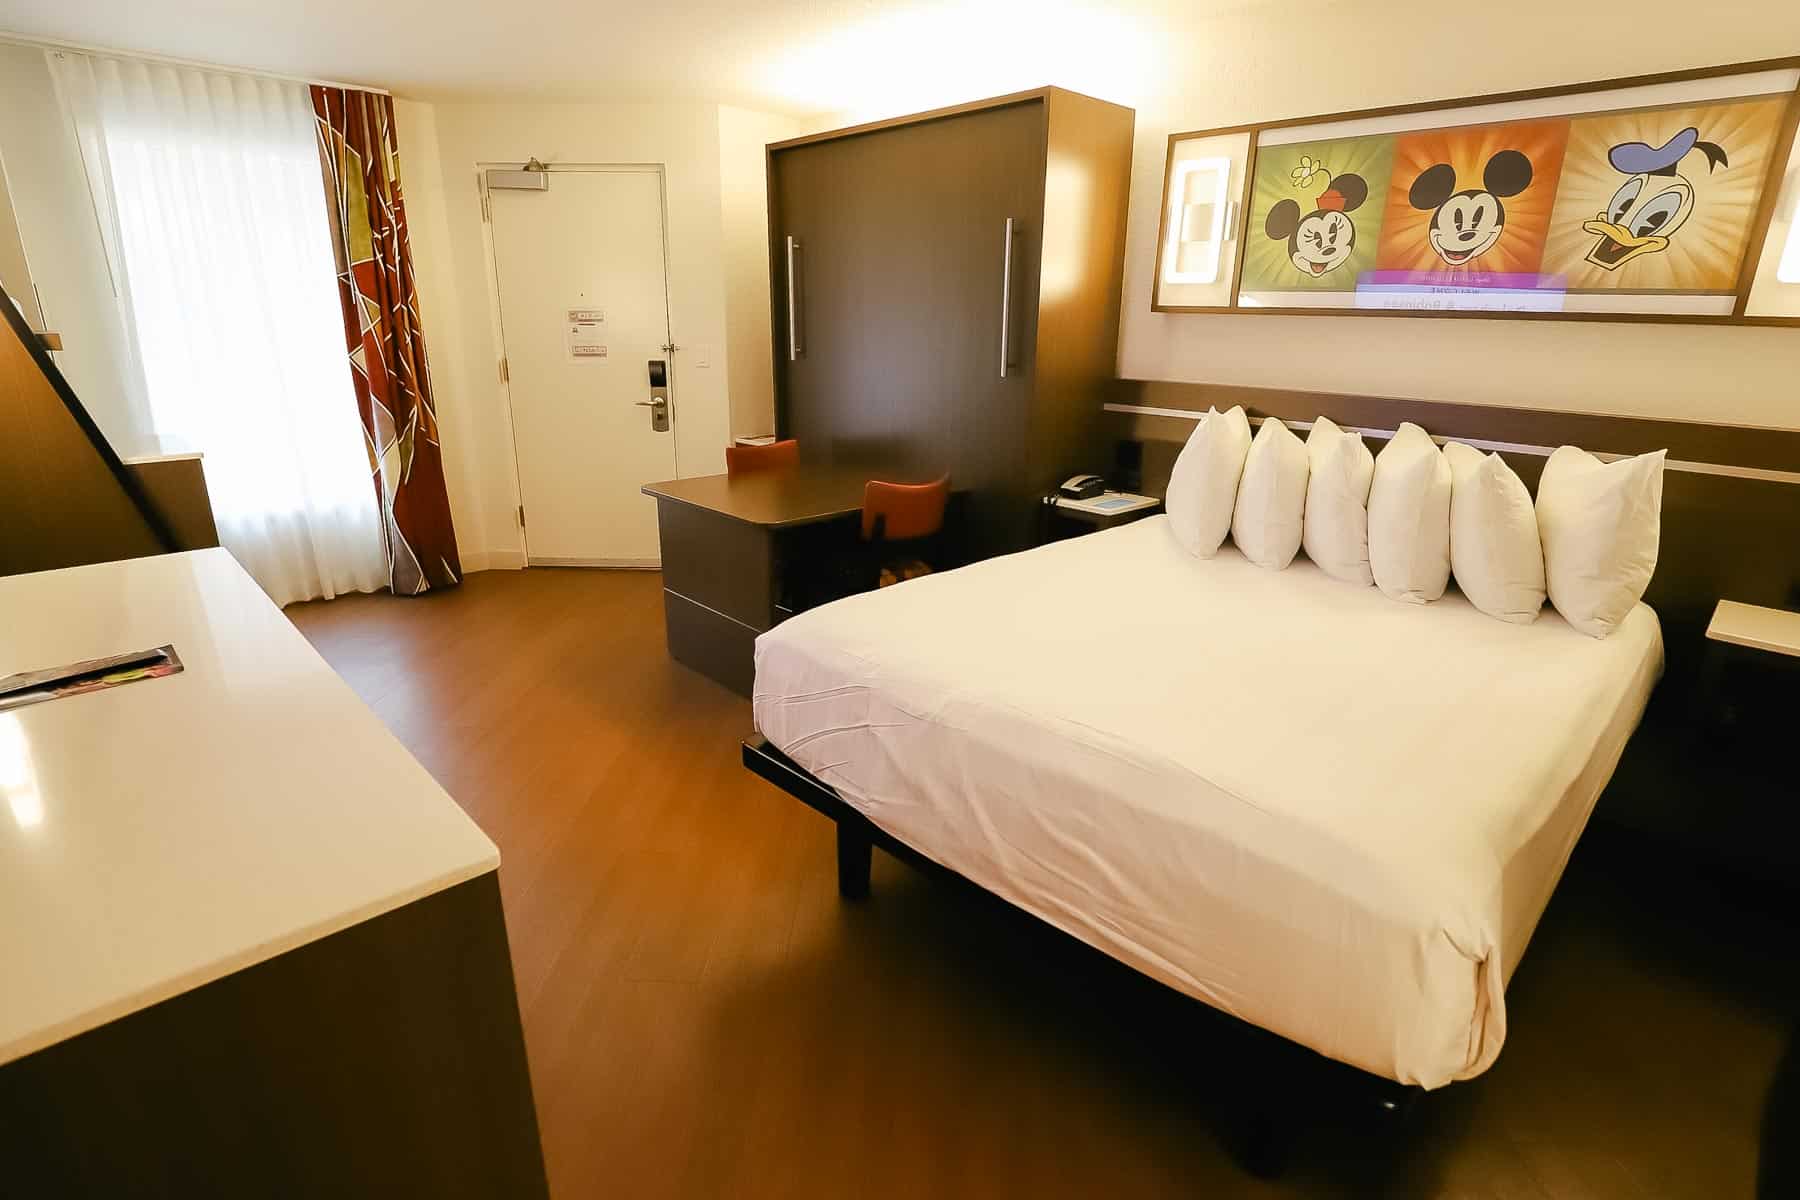 an All-Star value resort hotel room